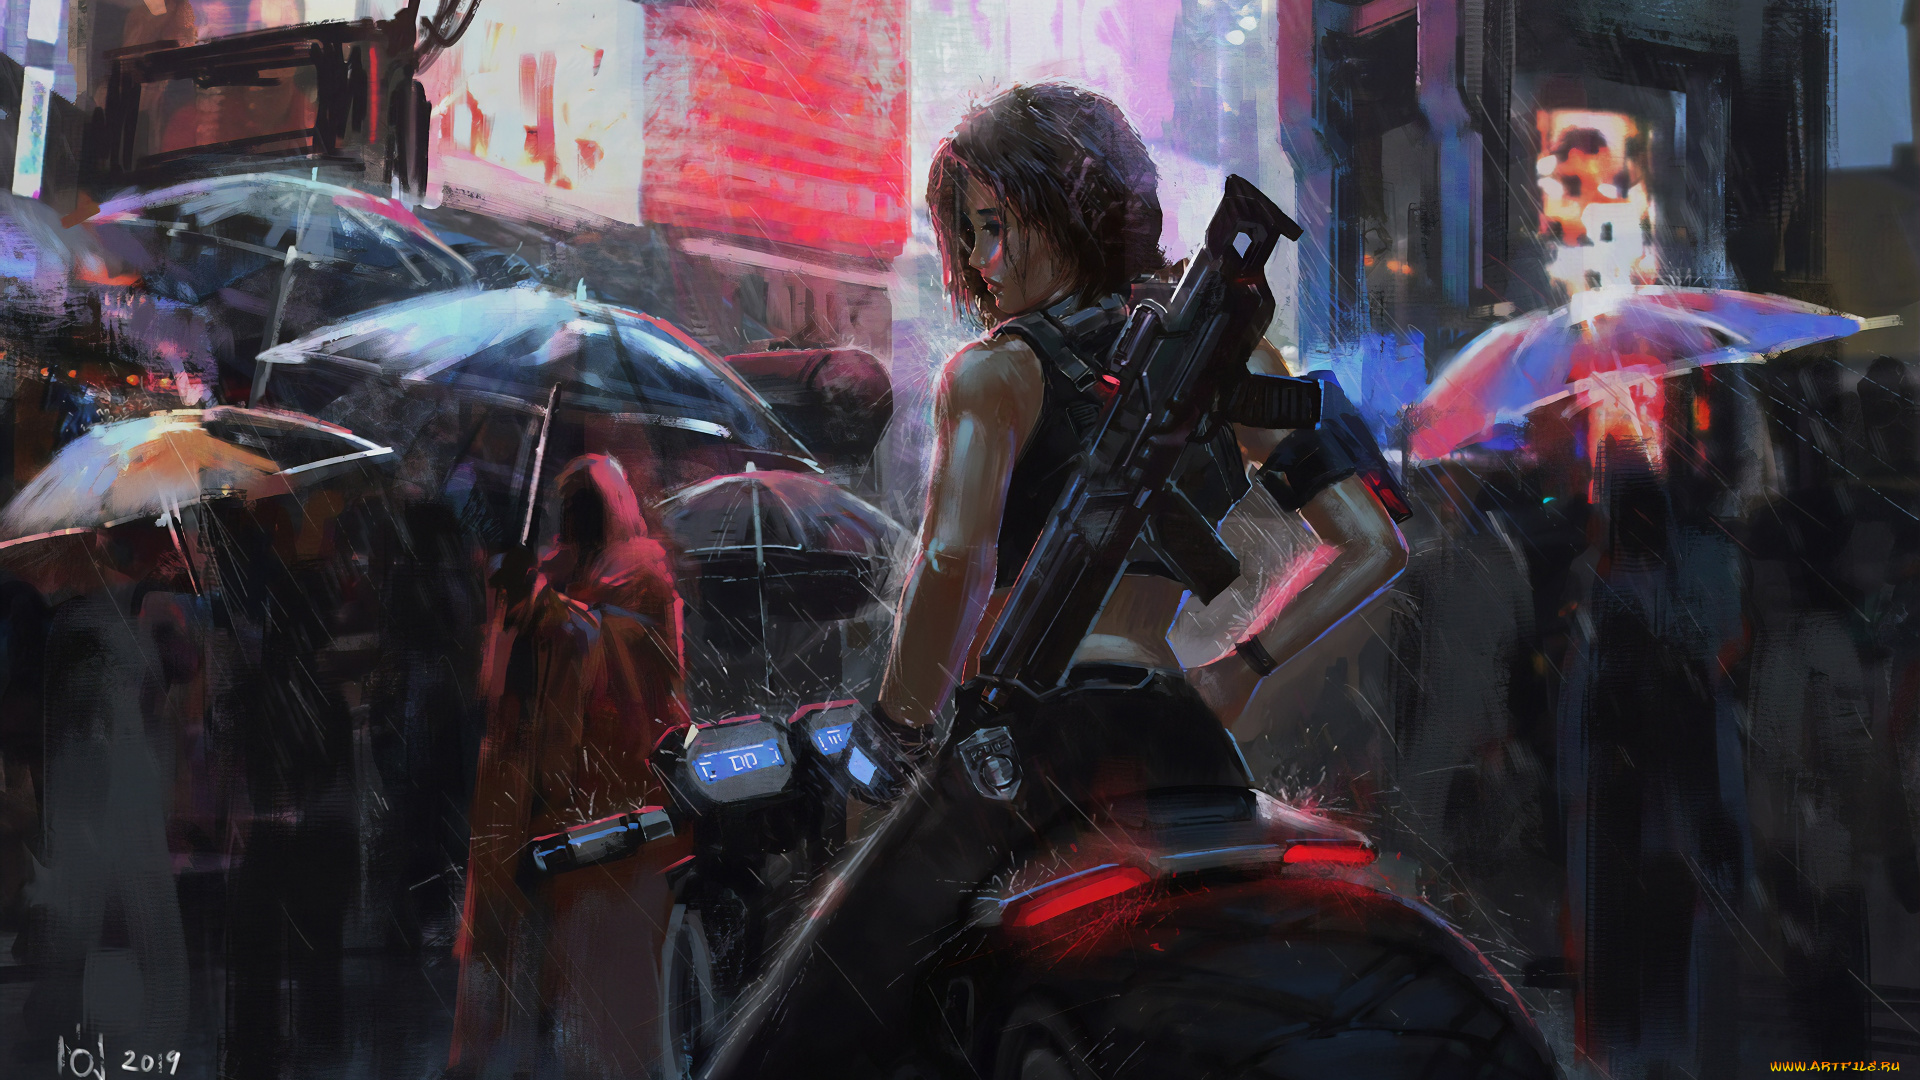 рисованное, комиксы, цифровое, искусство, зонтик, дождь, футуризм, мотоцикл, город, женщины, солдат, азиаты, оружие